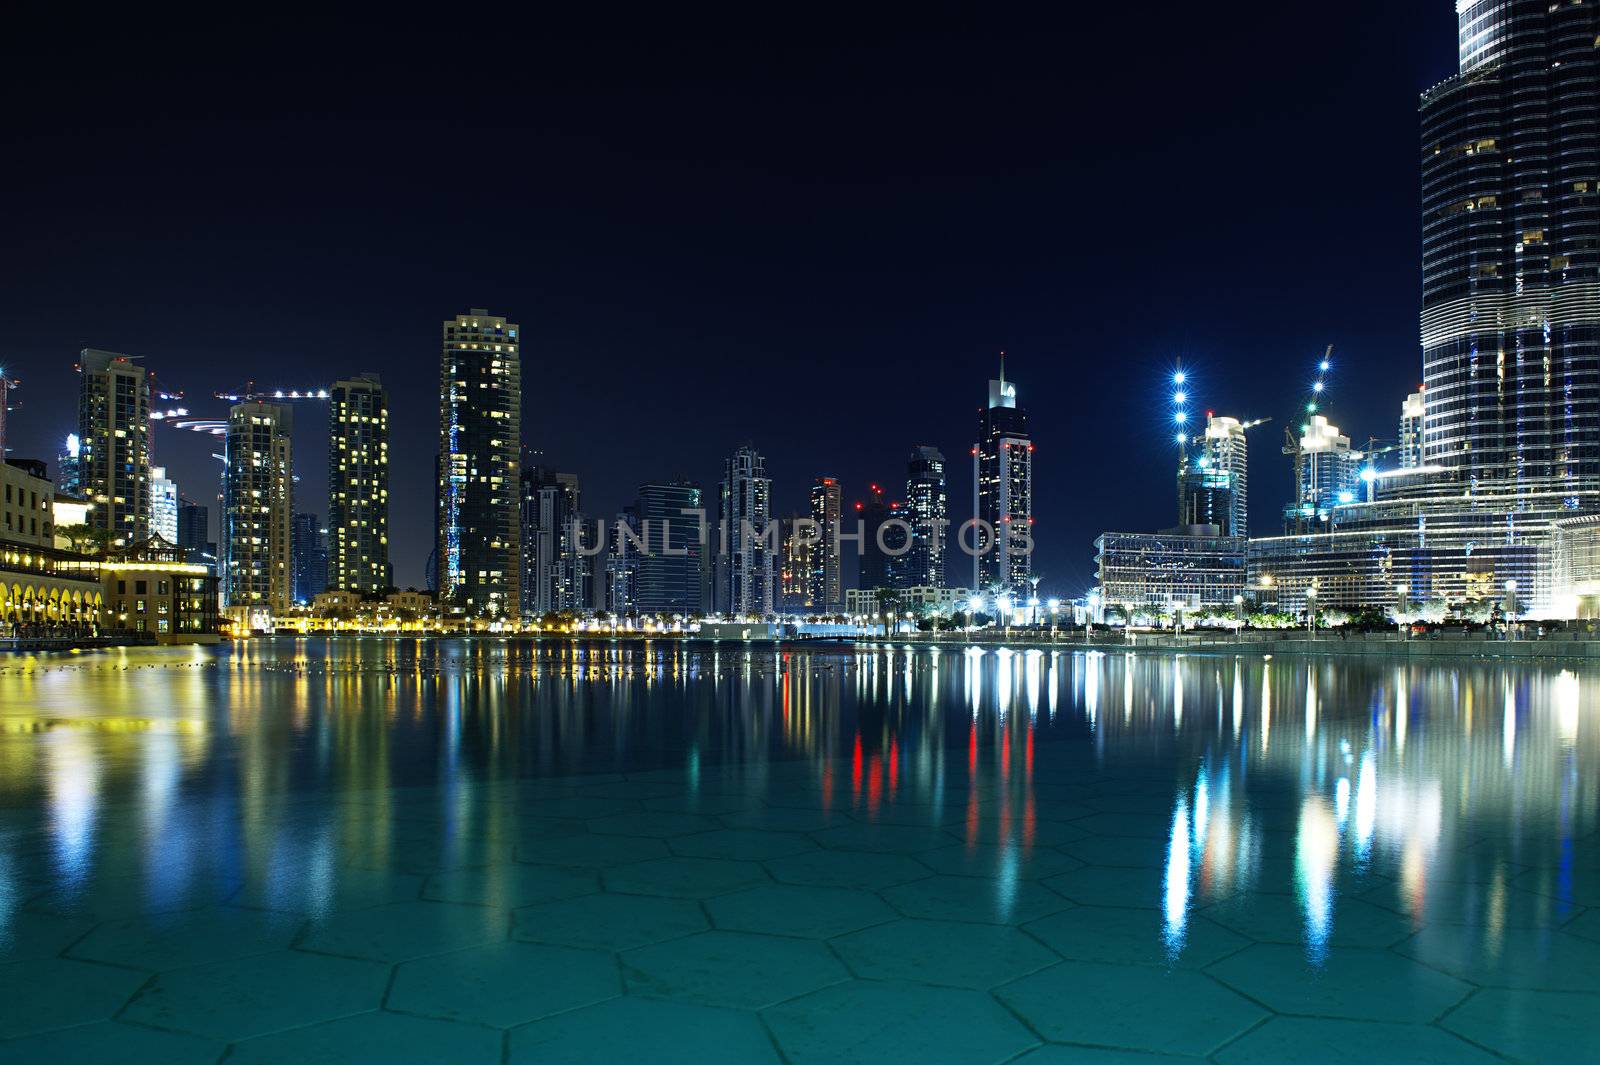 Dubai Night Scene by MOELLERTHOMSEN